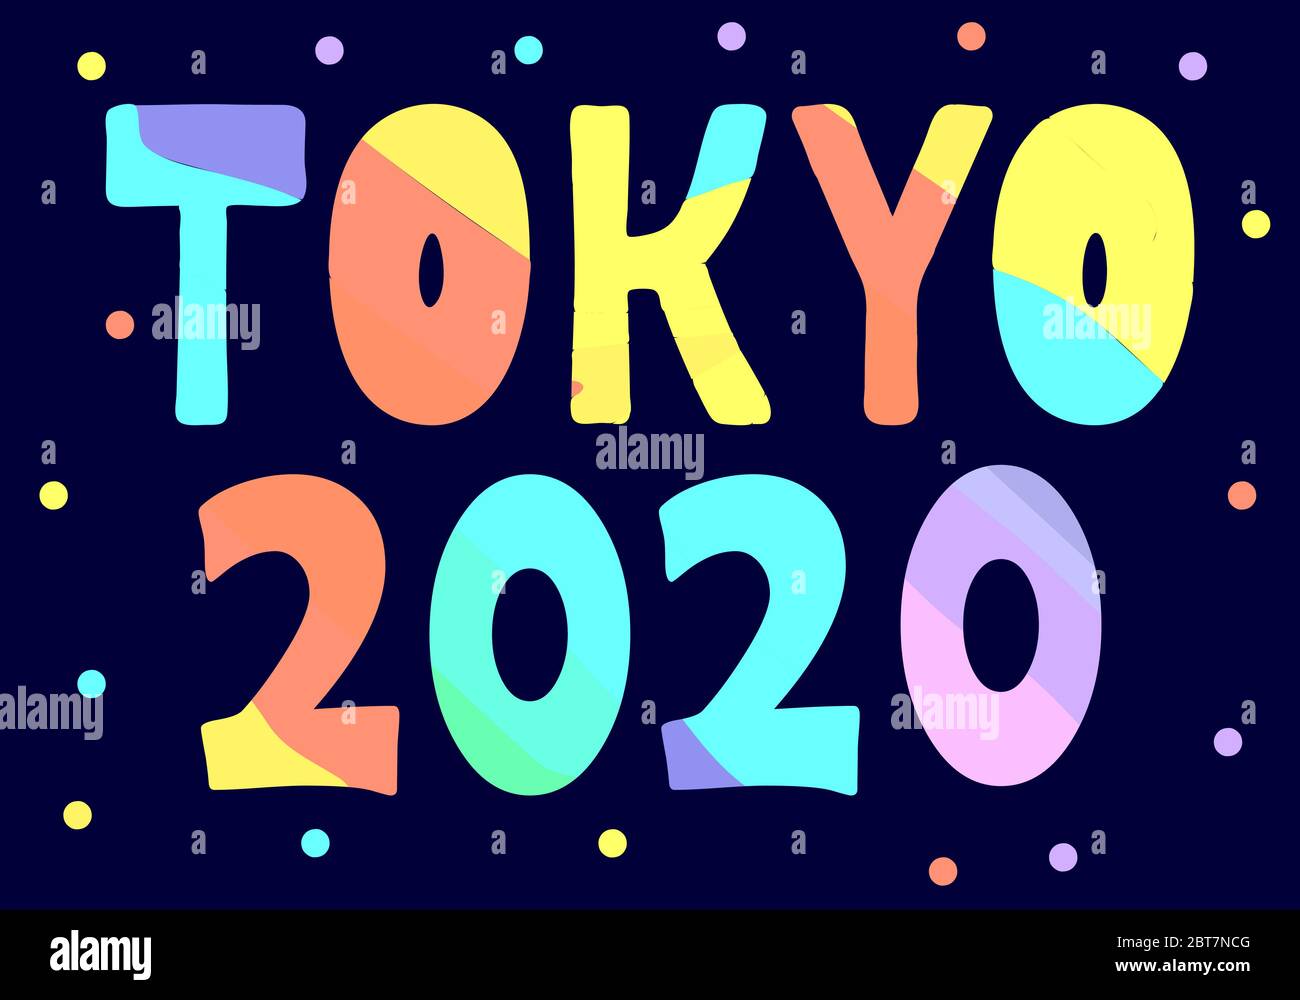 Tokyo 2020 - cartoni animati multicolore isolati iscrizione. Tokyo è la capitale del Giappone. Per striscioni, poster, souvenir e stampe su abbigliamento. Illustrazione Vettoriale